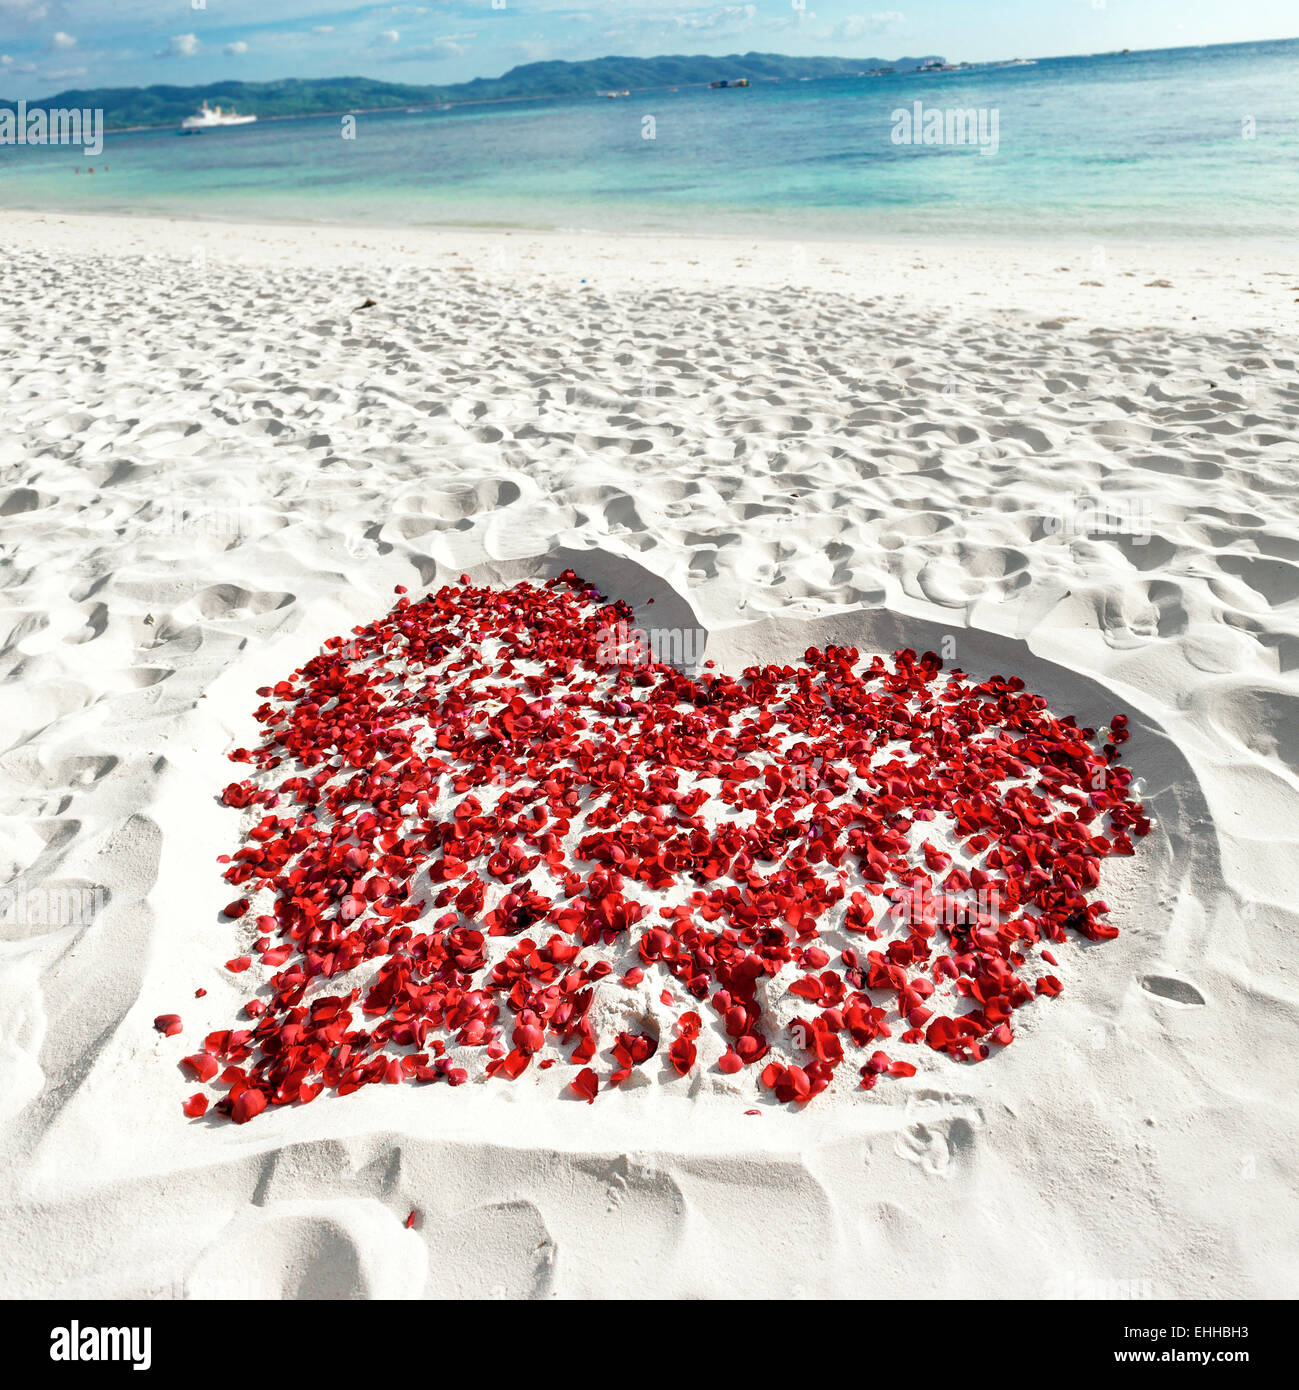 Coeur de pétales de roses de la médecine tropicale et plage de sable. Personne n. Concept d'amour Banque D'Images